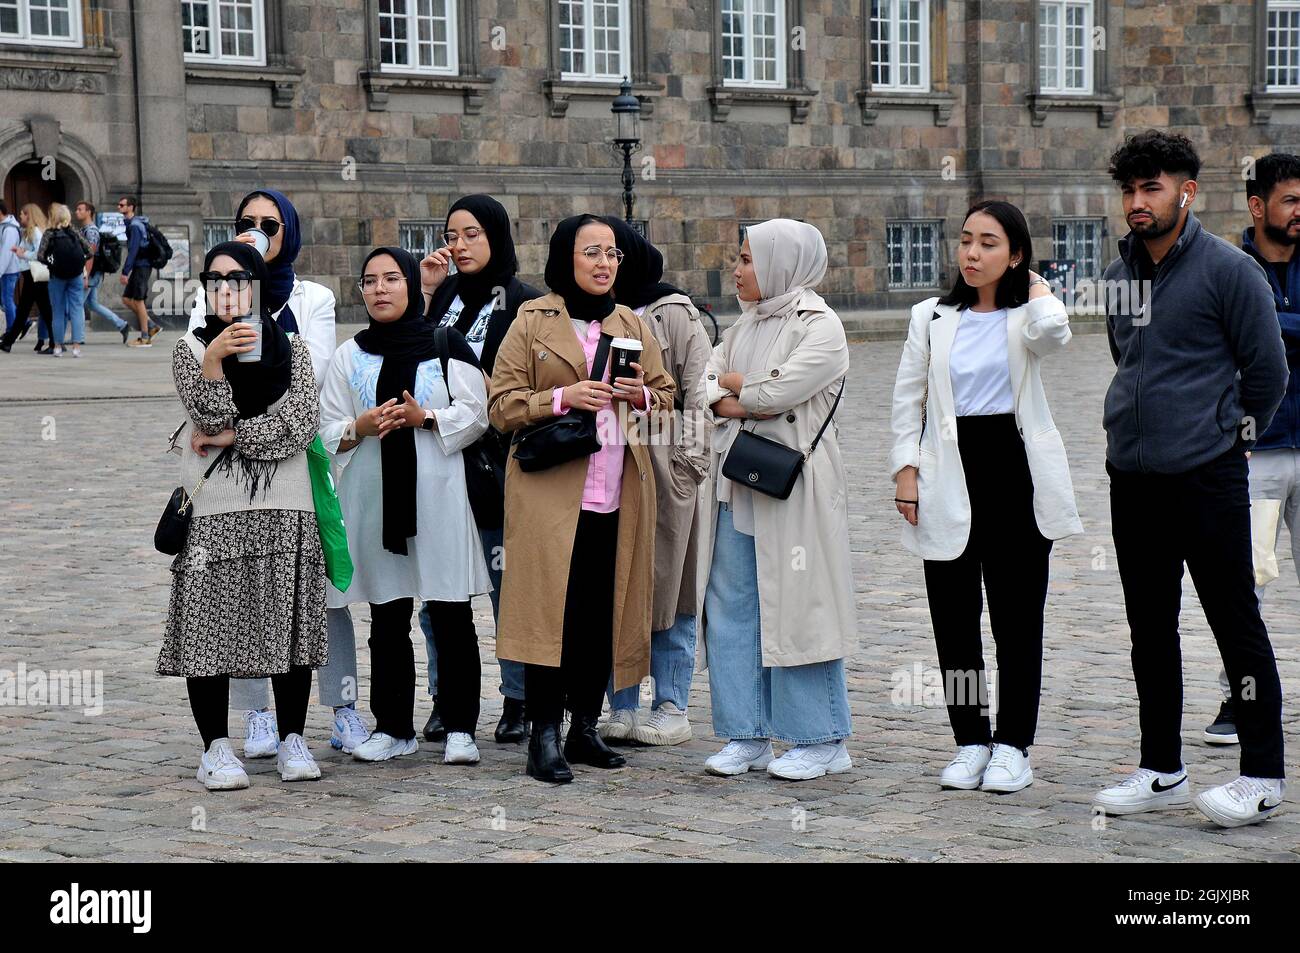 Copenhague, Danemark.12 septembre 2021 /les Afgans vivant au Danemark protestent contre la règle des Talibans gainés govt.in le Danemark et aussi le Pakistan aainst veulent sortir d'Afg Banque D'Images